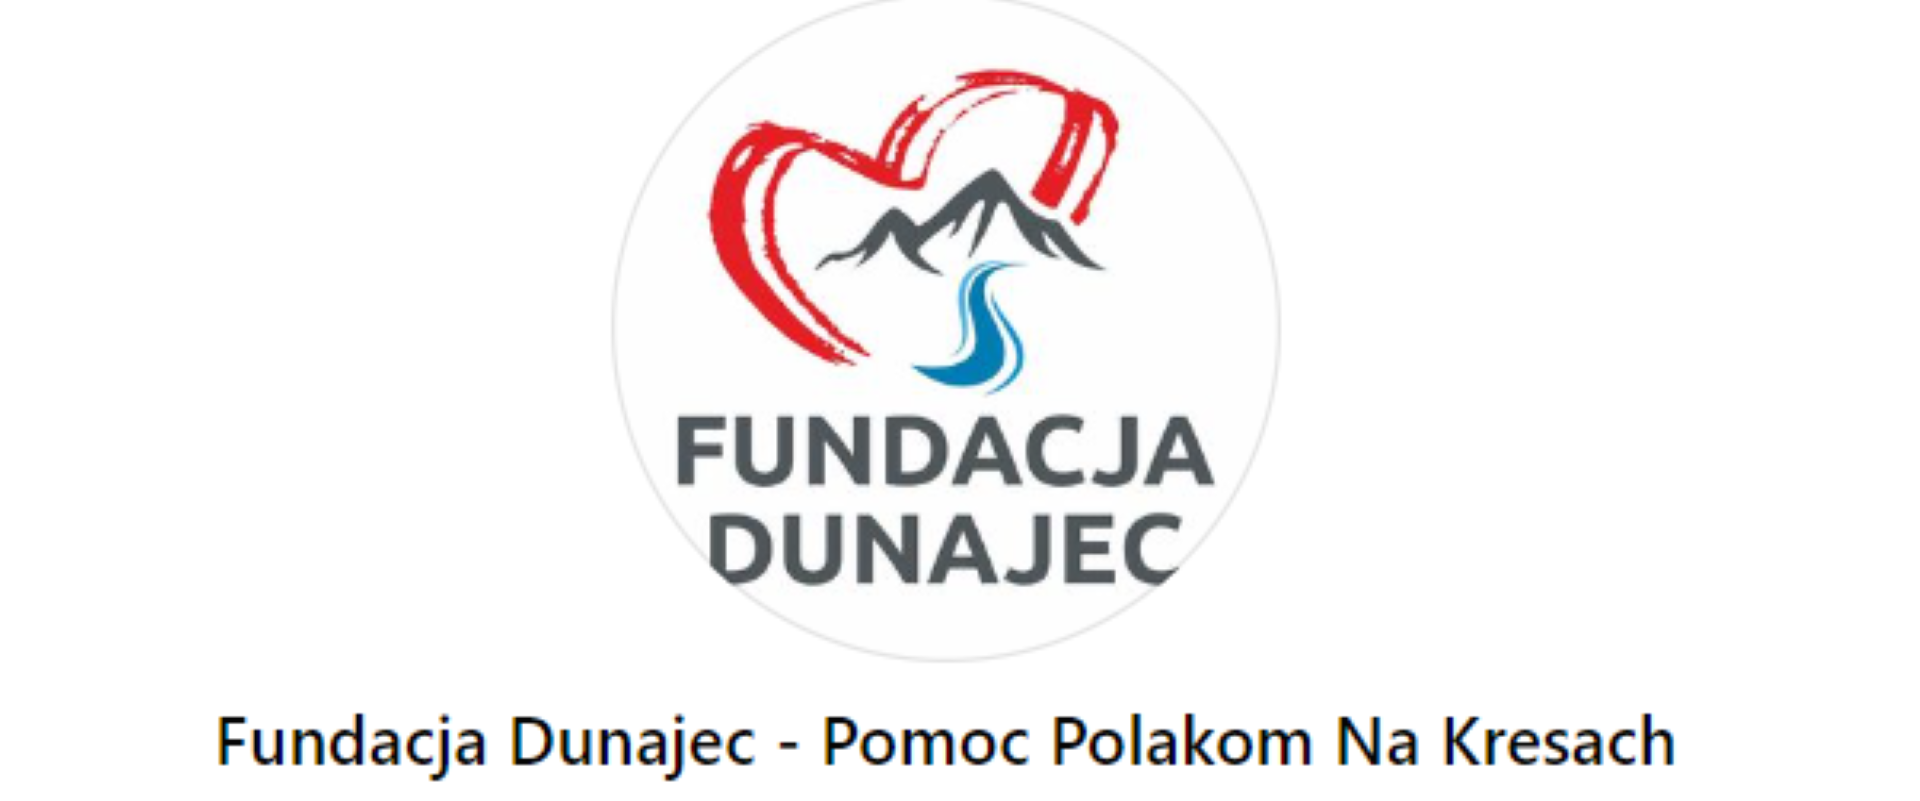 Wielkanocna akcja Fundacji Dunajec